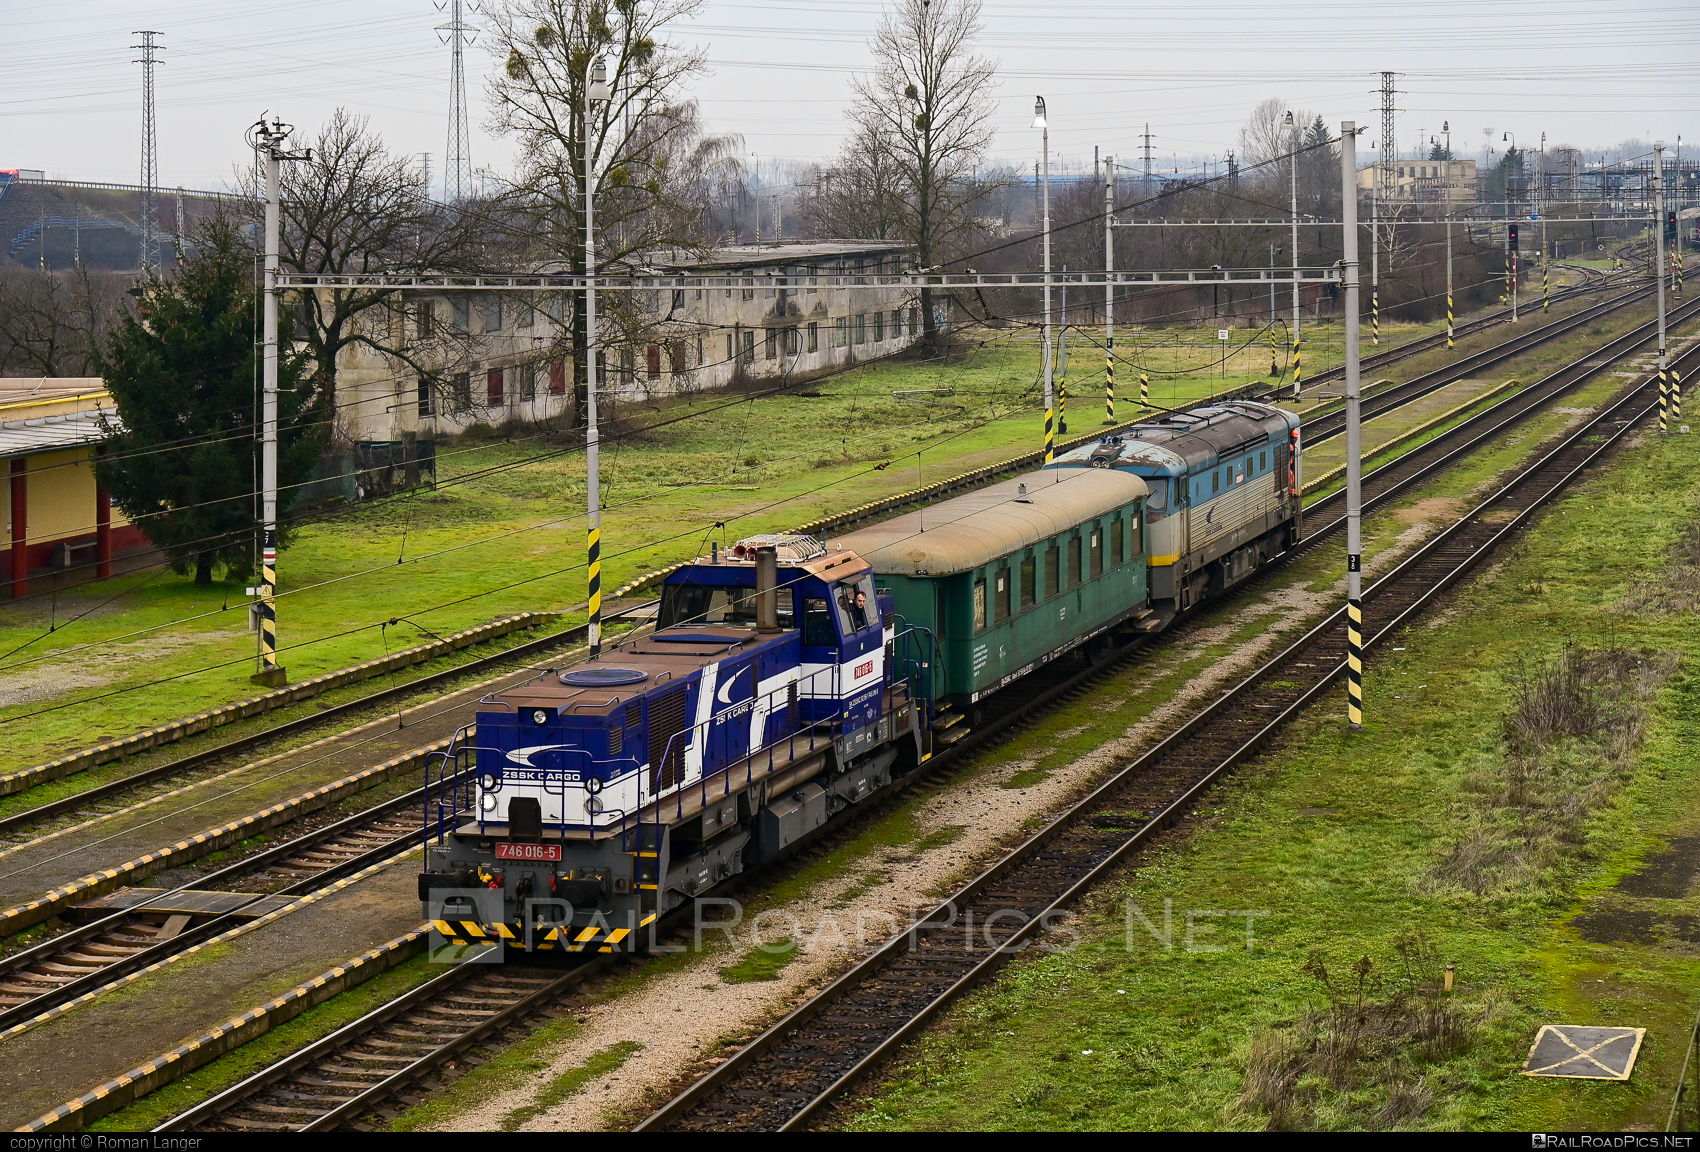 ŽOS Zvolen Class 746 - 746 016-5 operated by Železničná Spoločnost' Cargo Slovakia a.s. #ZeleznicnaSpolocnostCargoSlovakia #locomotive746 #zoszvolen #zoszvolen746 #zsskcClass746 #zsskcargo